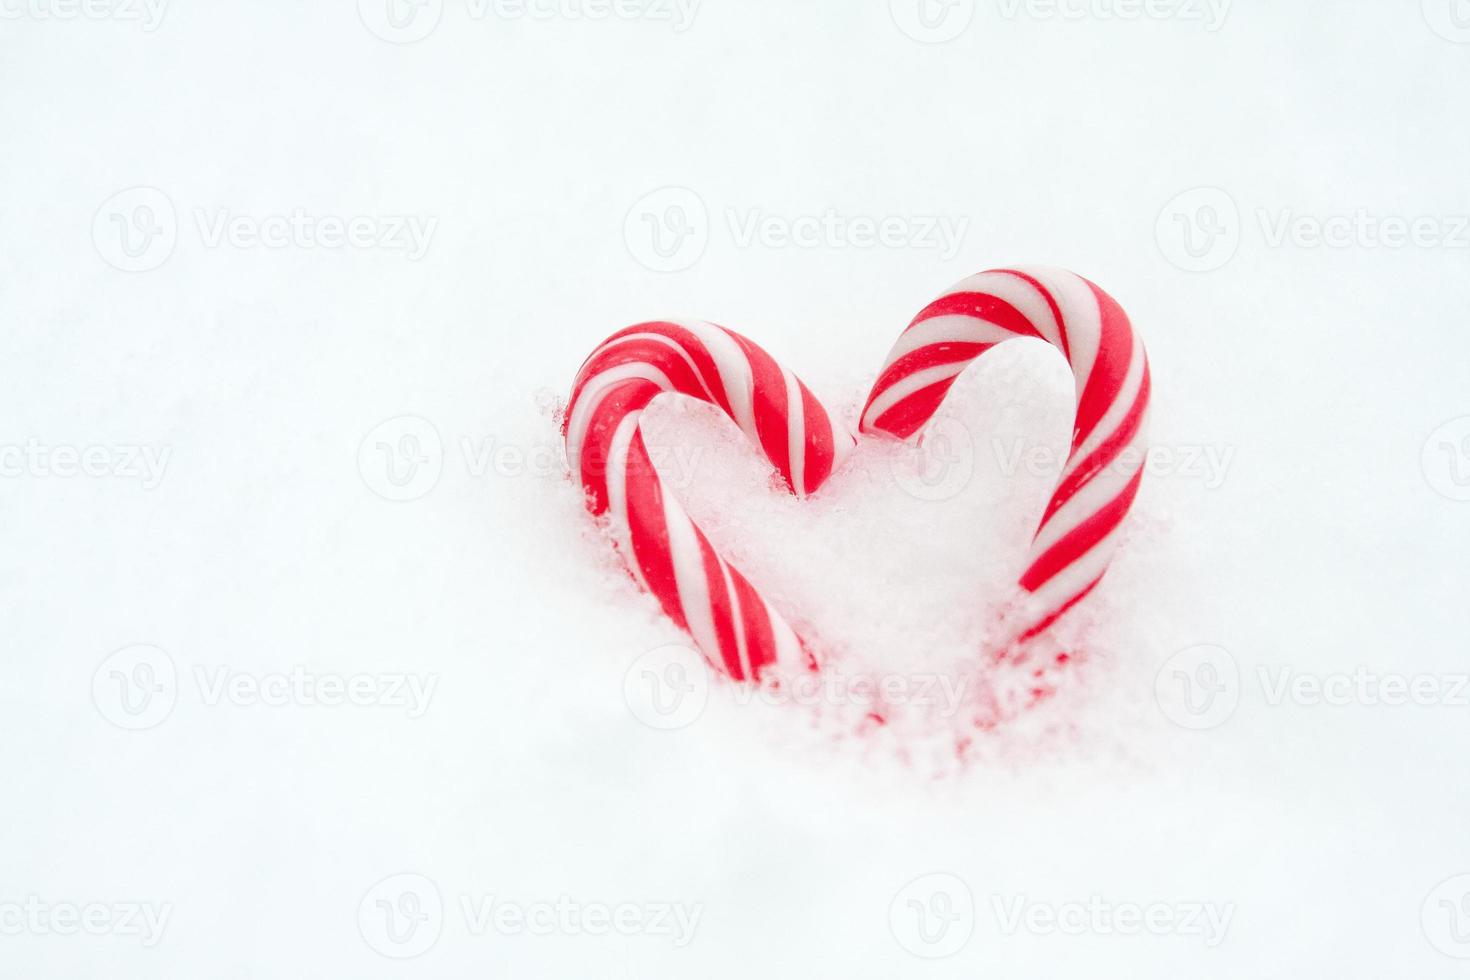 coração de hortelã na neve foto